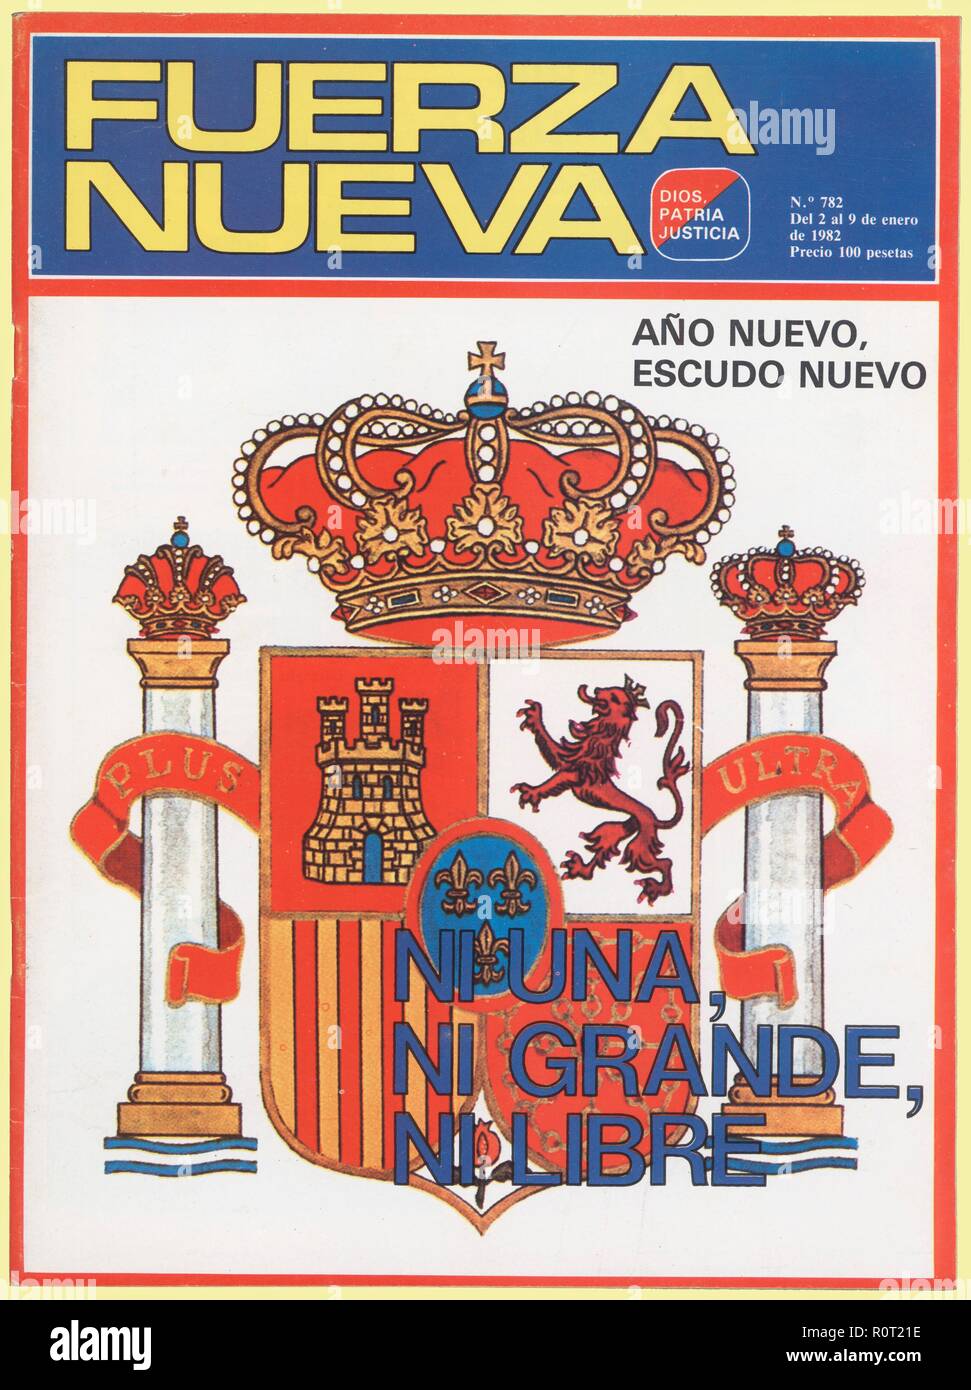 Portada de la revista Fuerza Nueva, órgano del Partido de extrema derecha. Madrid, 1982. Foto Stock